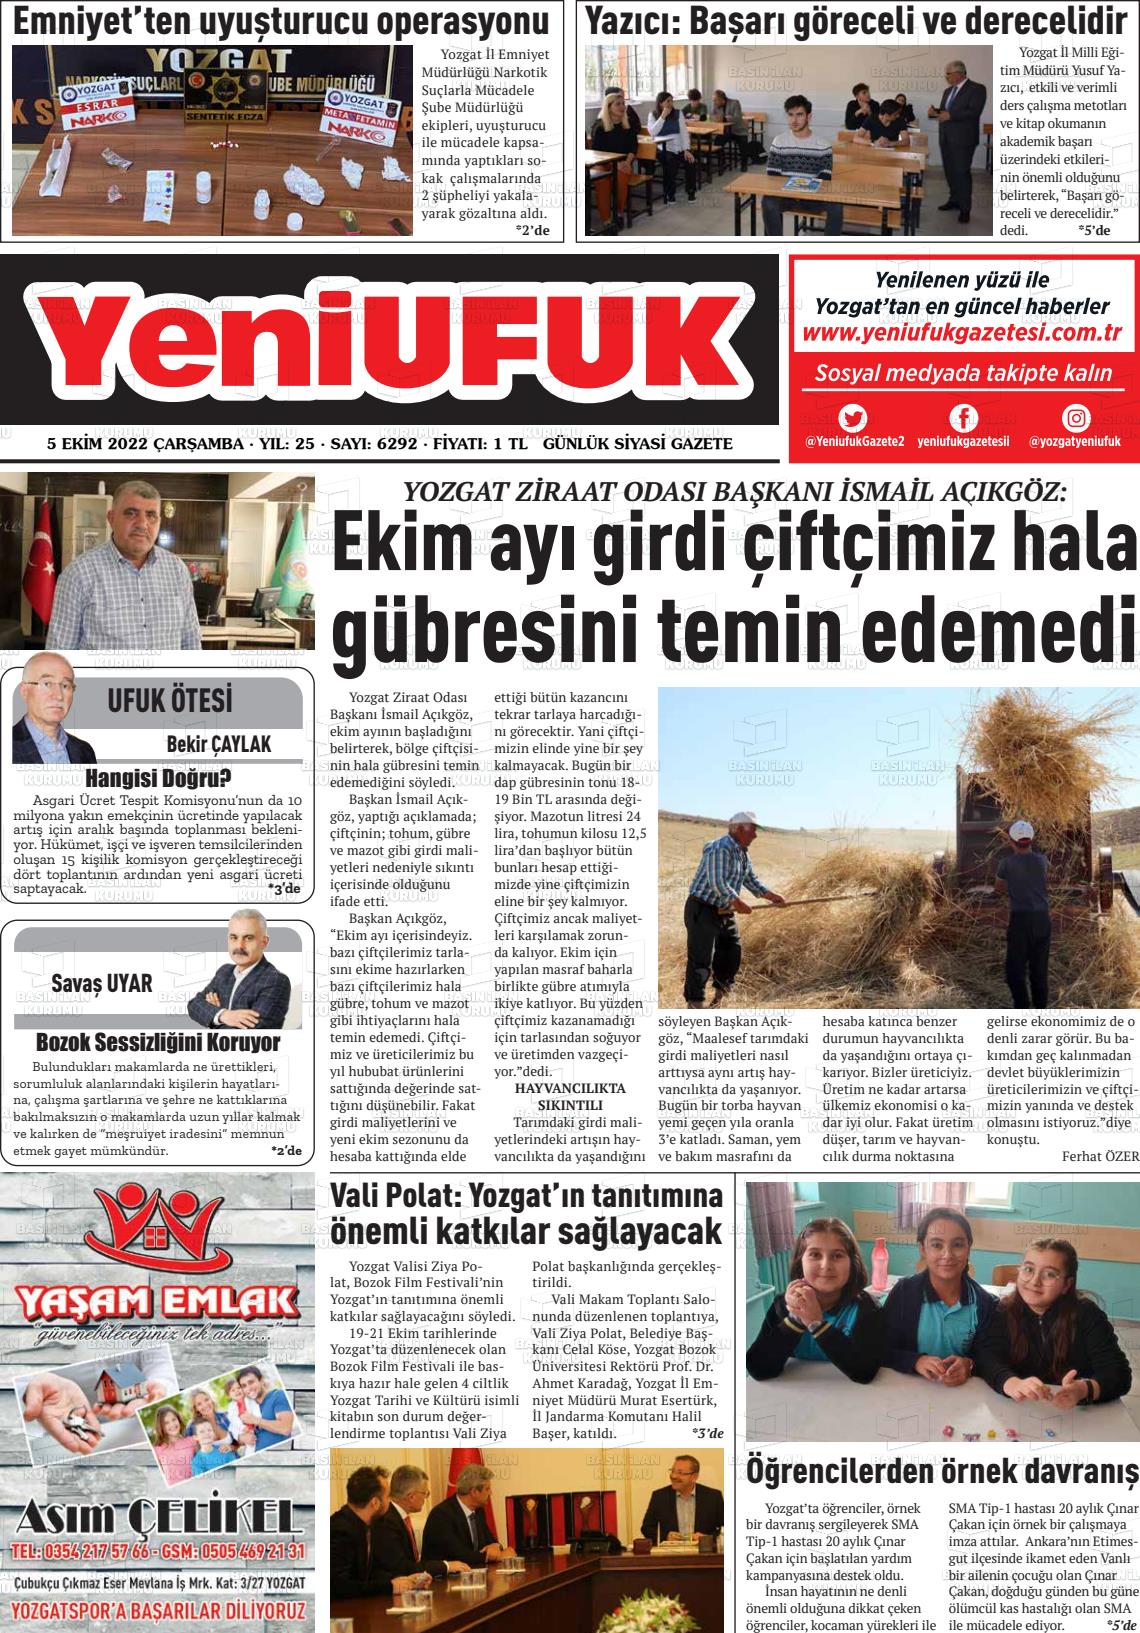 05 Ekim 2022 Yozgat Yeni Ufuk Gazete Manşeti